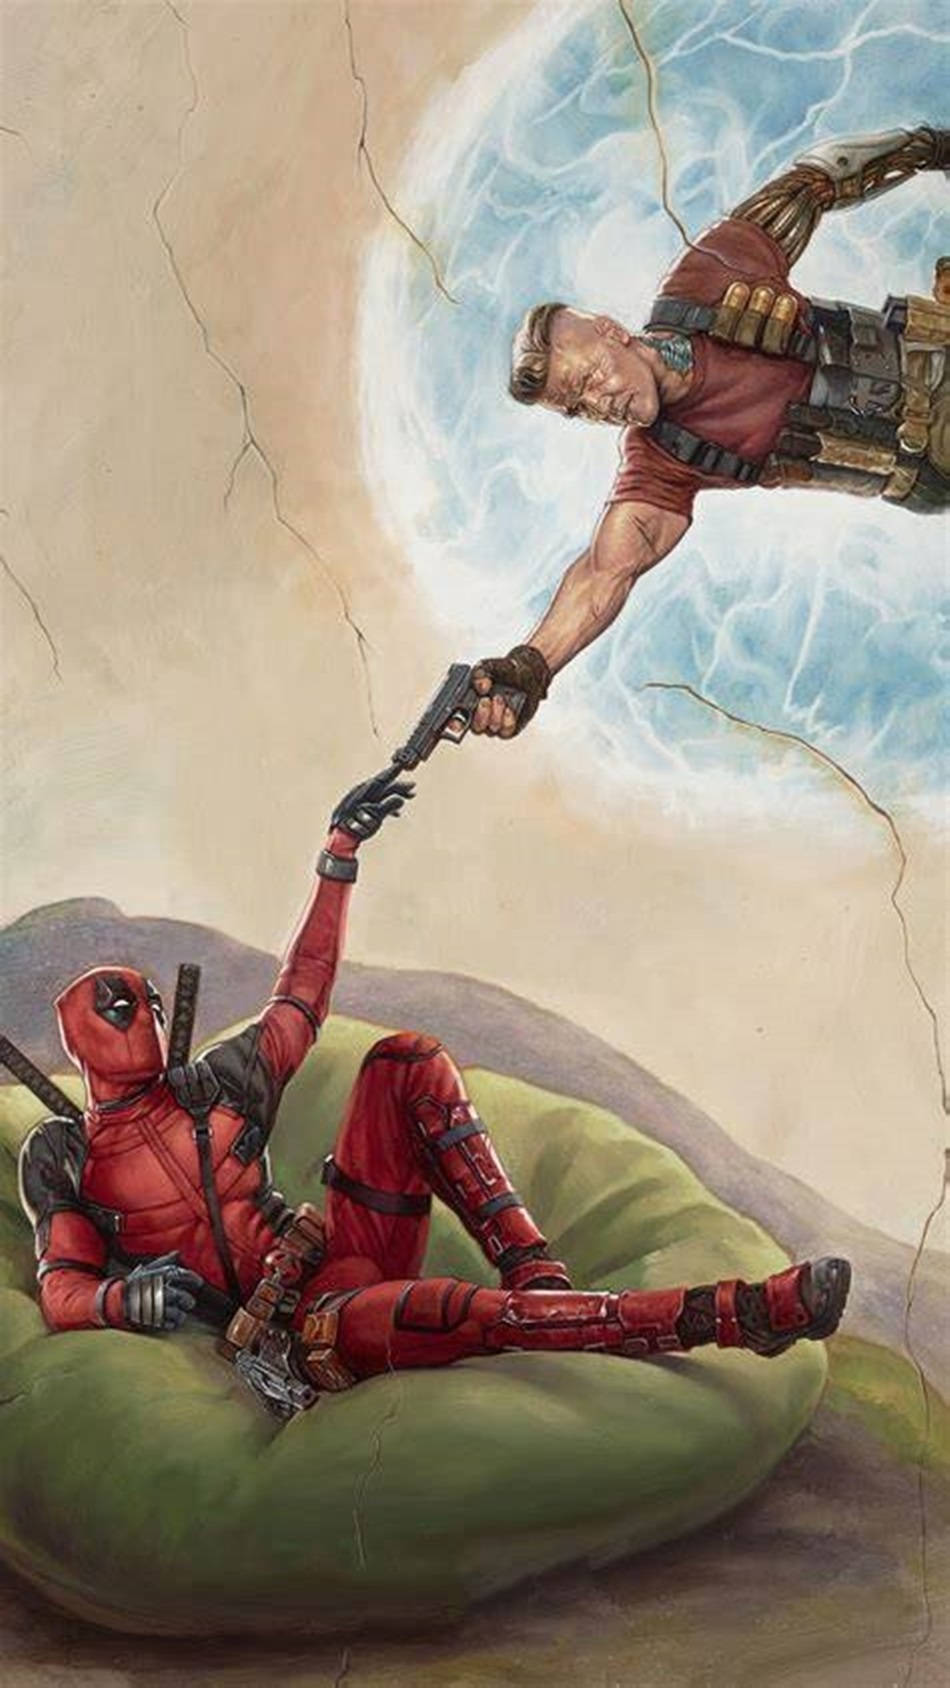 Deadpoolfilm Parodie Des Gemäldes Erschaffung Adams Wallpaper